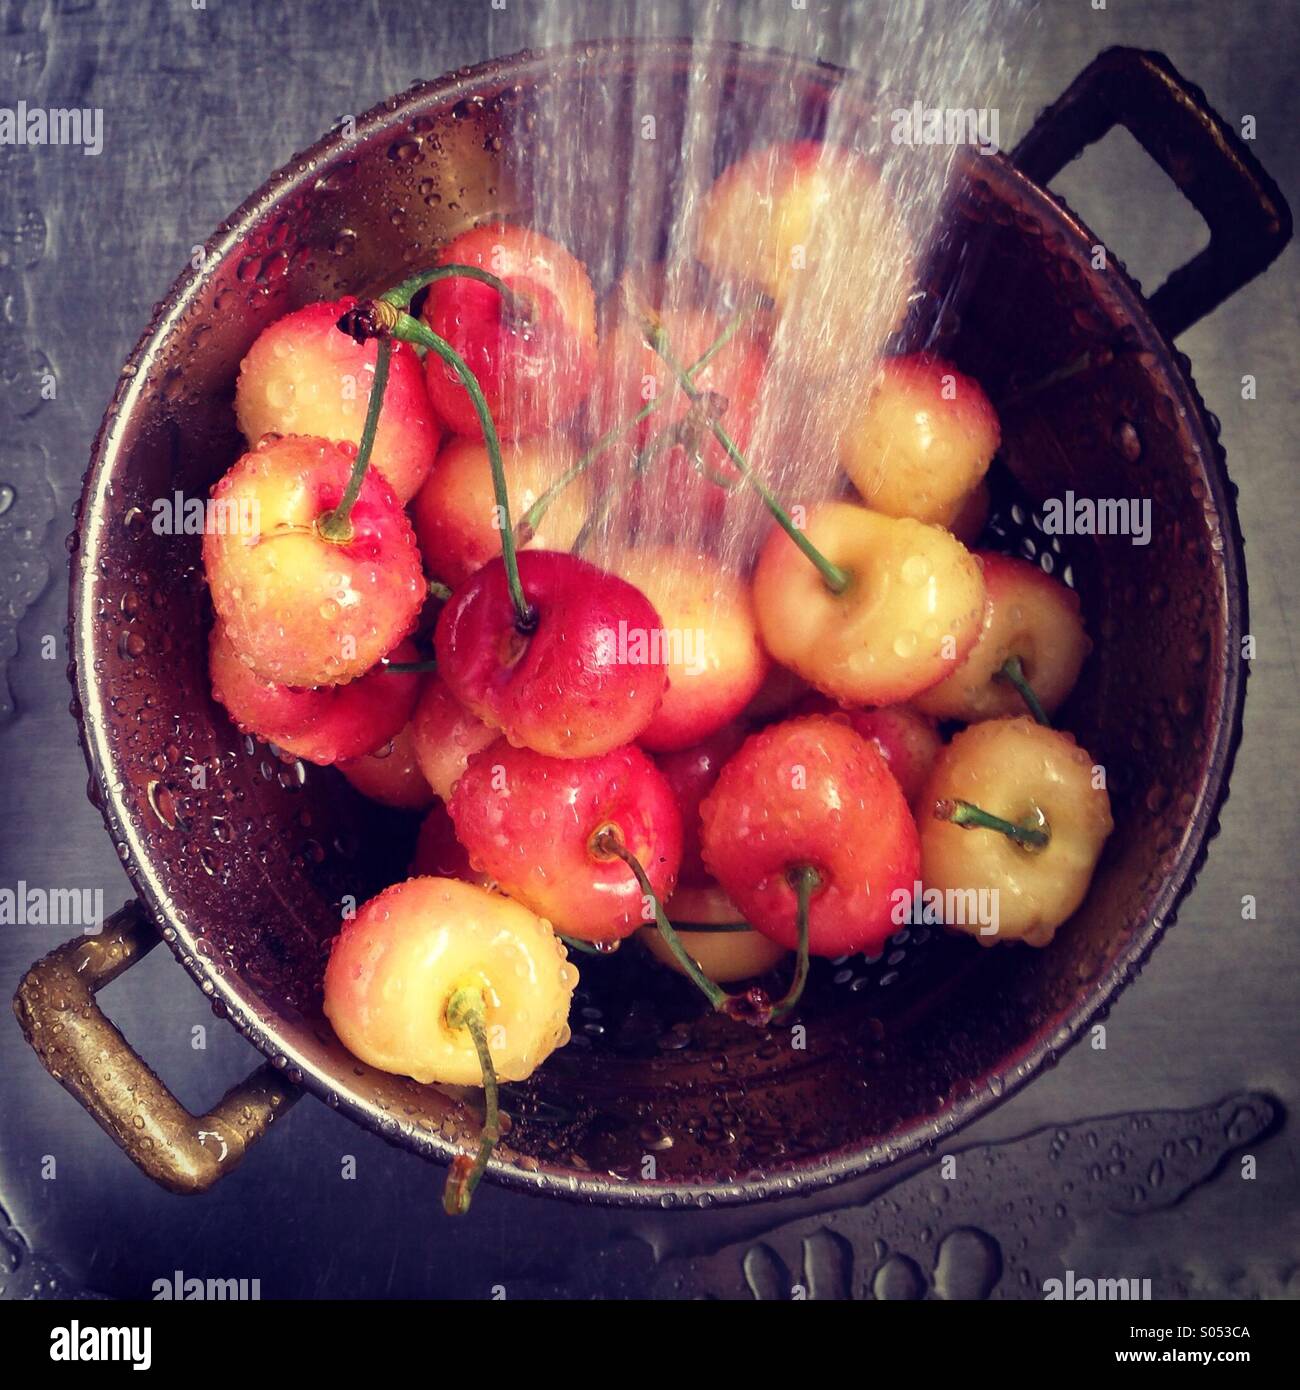 Washing Rainier cherries in kitchen sink. Stock Photo